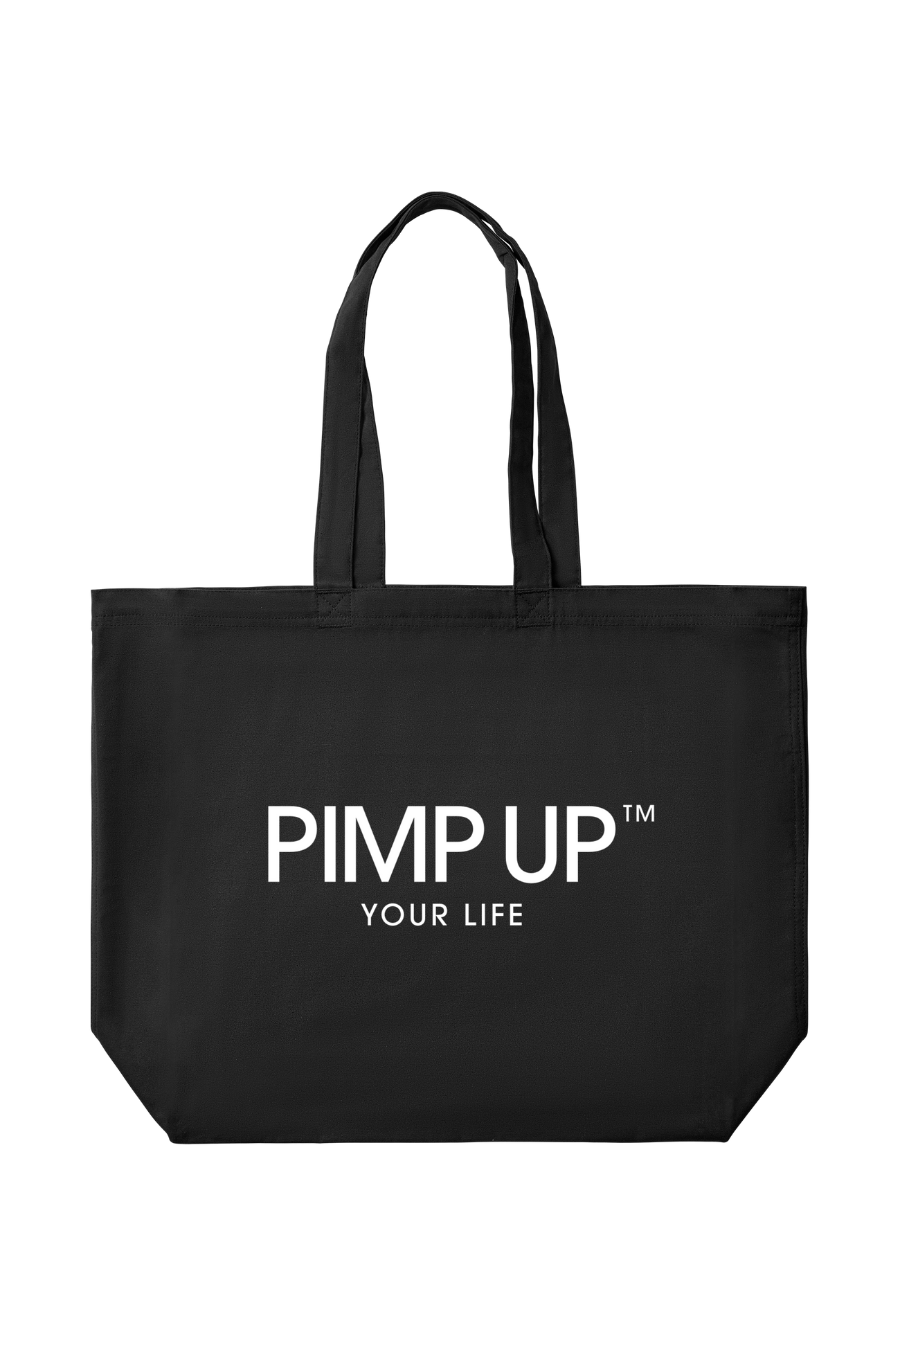 THE PIMP UP™ SHOPPING BAG